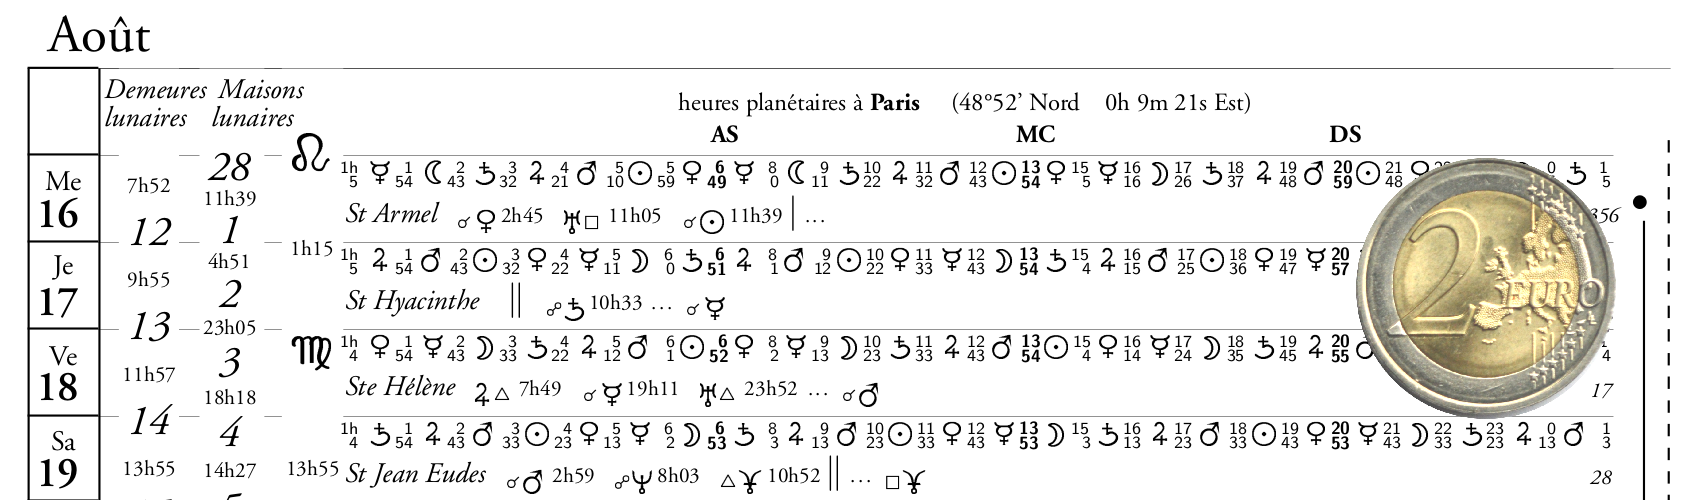 détail du calendrier astrologique avec heures planétaires et aspects de la Lune, format carré